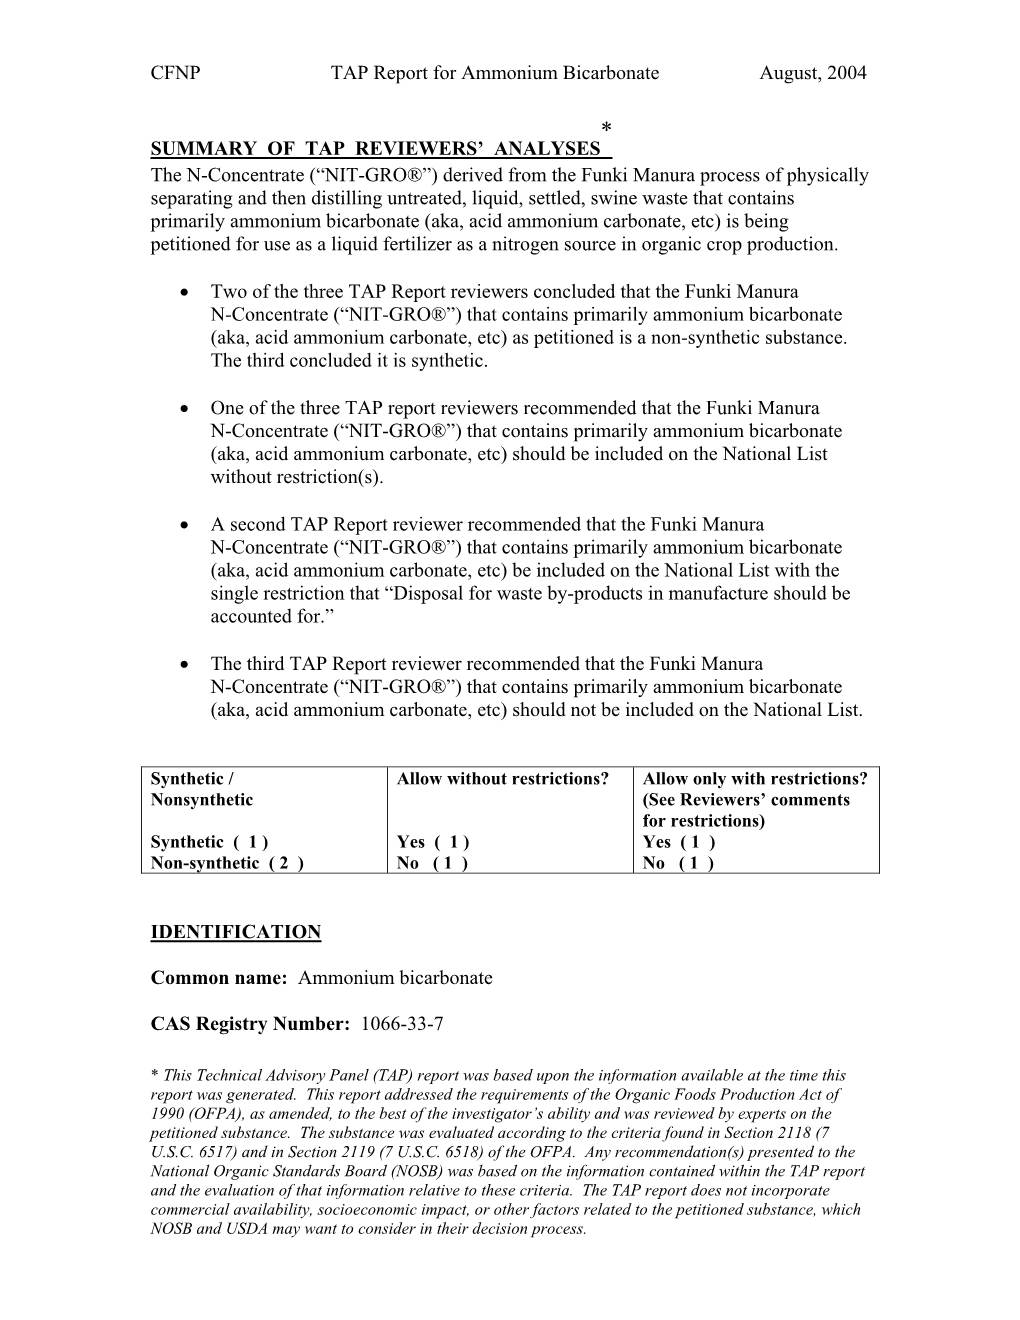 CFNP TAP Report for Ammonium Bicarbonate August, 2004